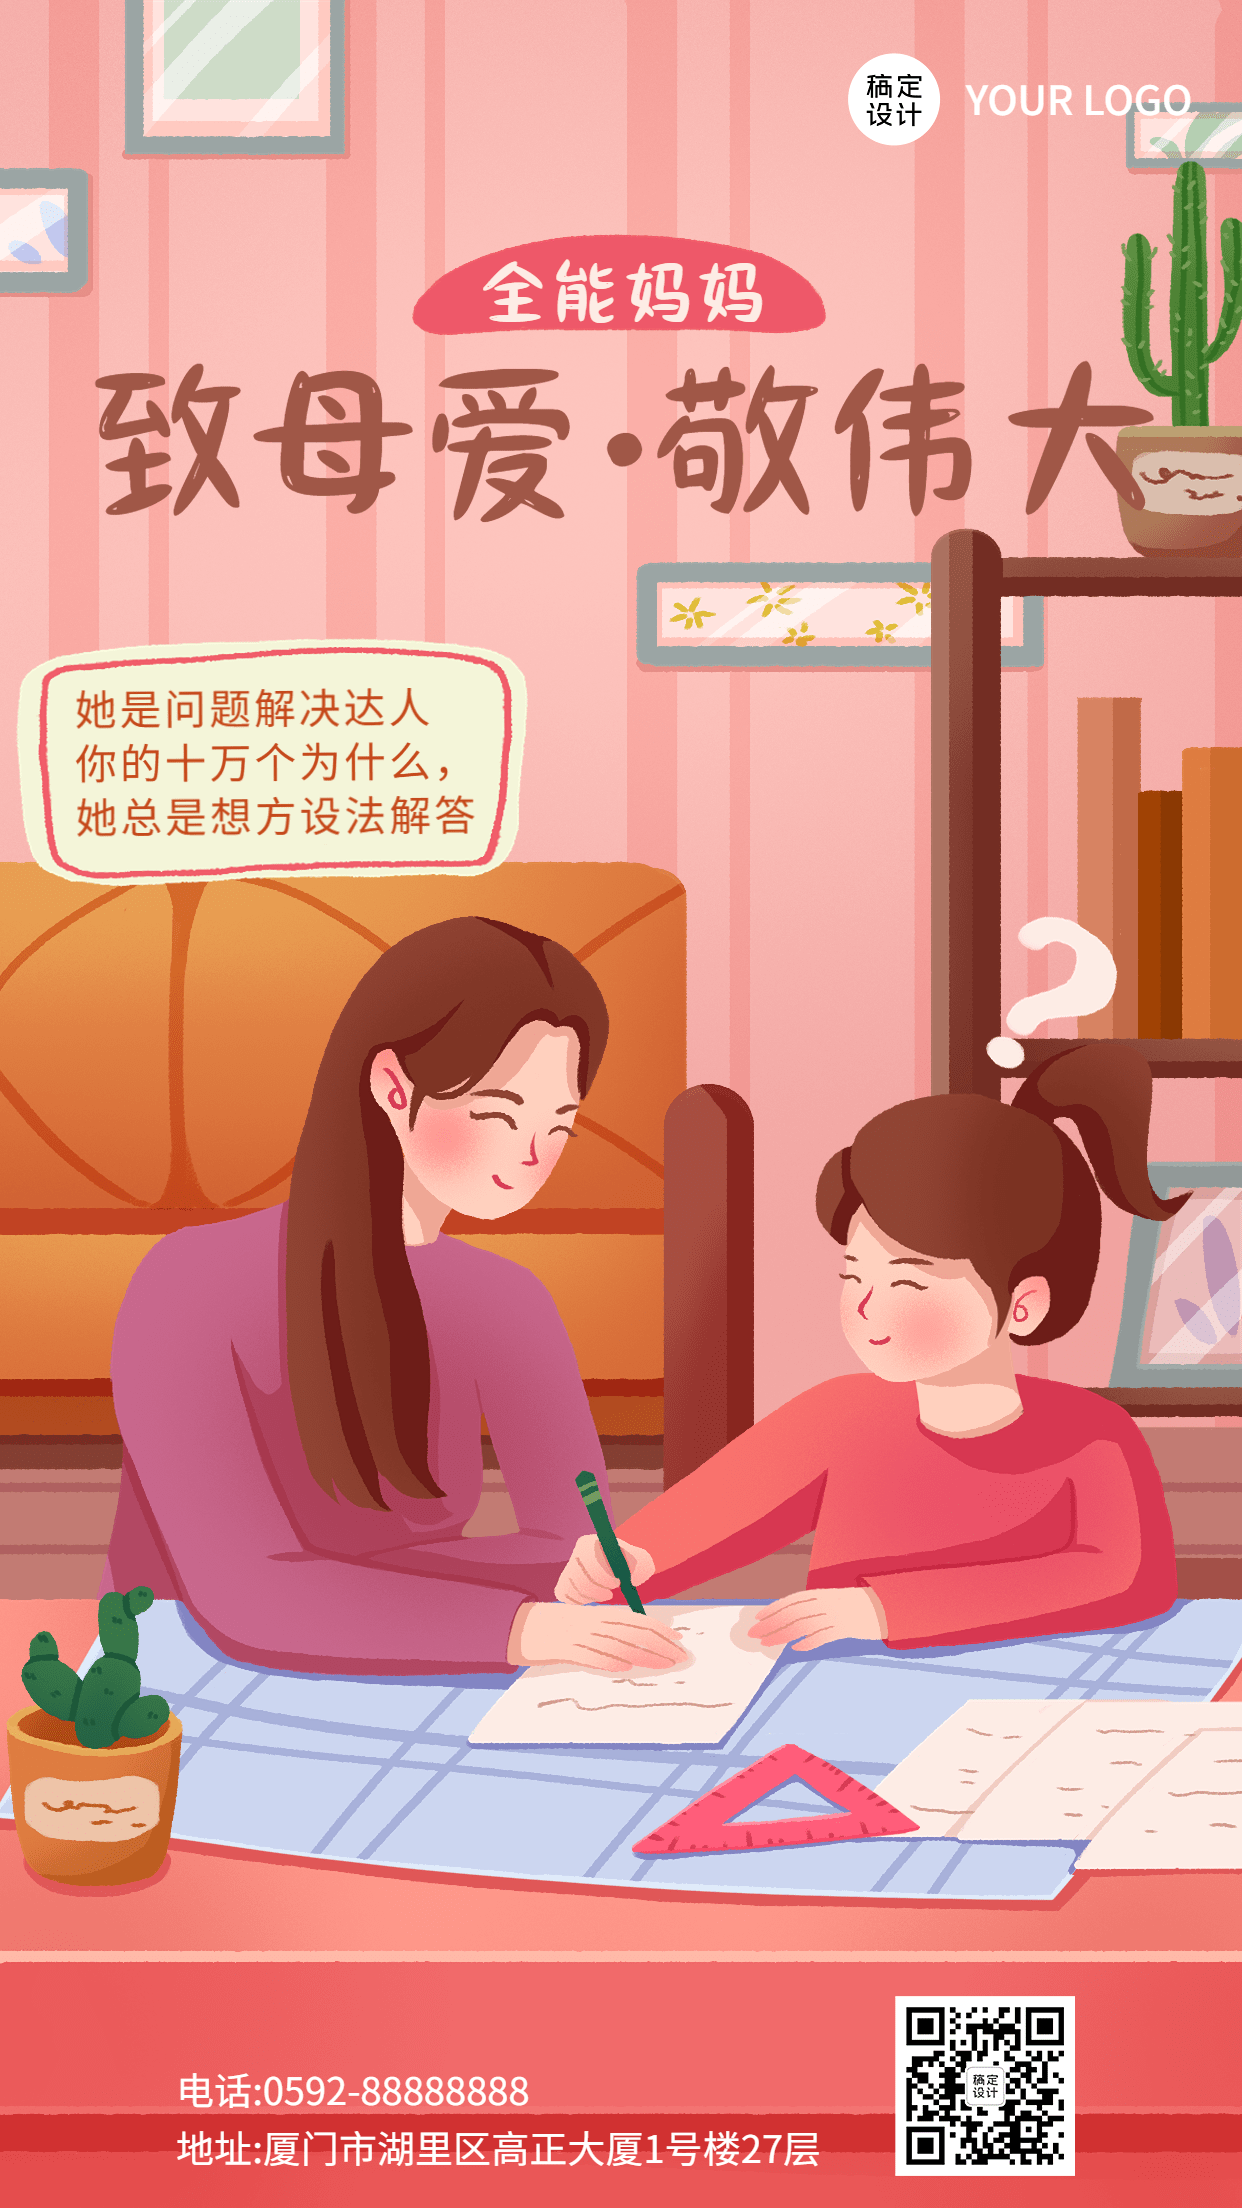 母亲节节日话题致敬妈妈插画套系手机海报